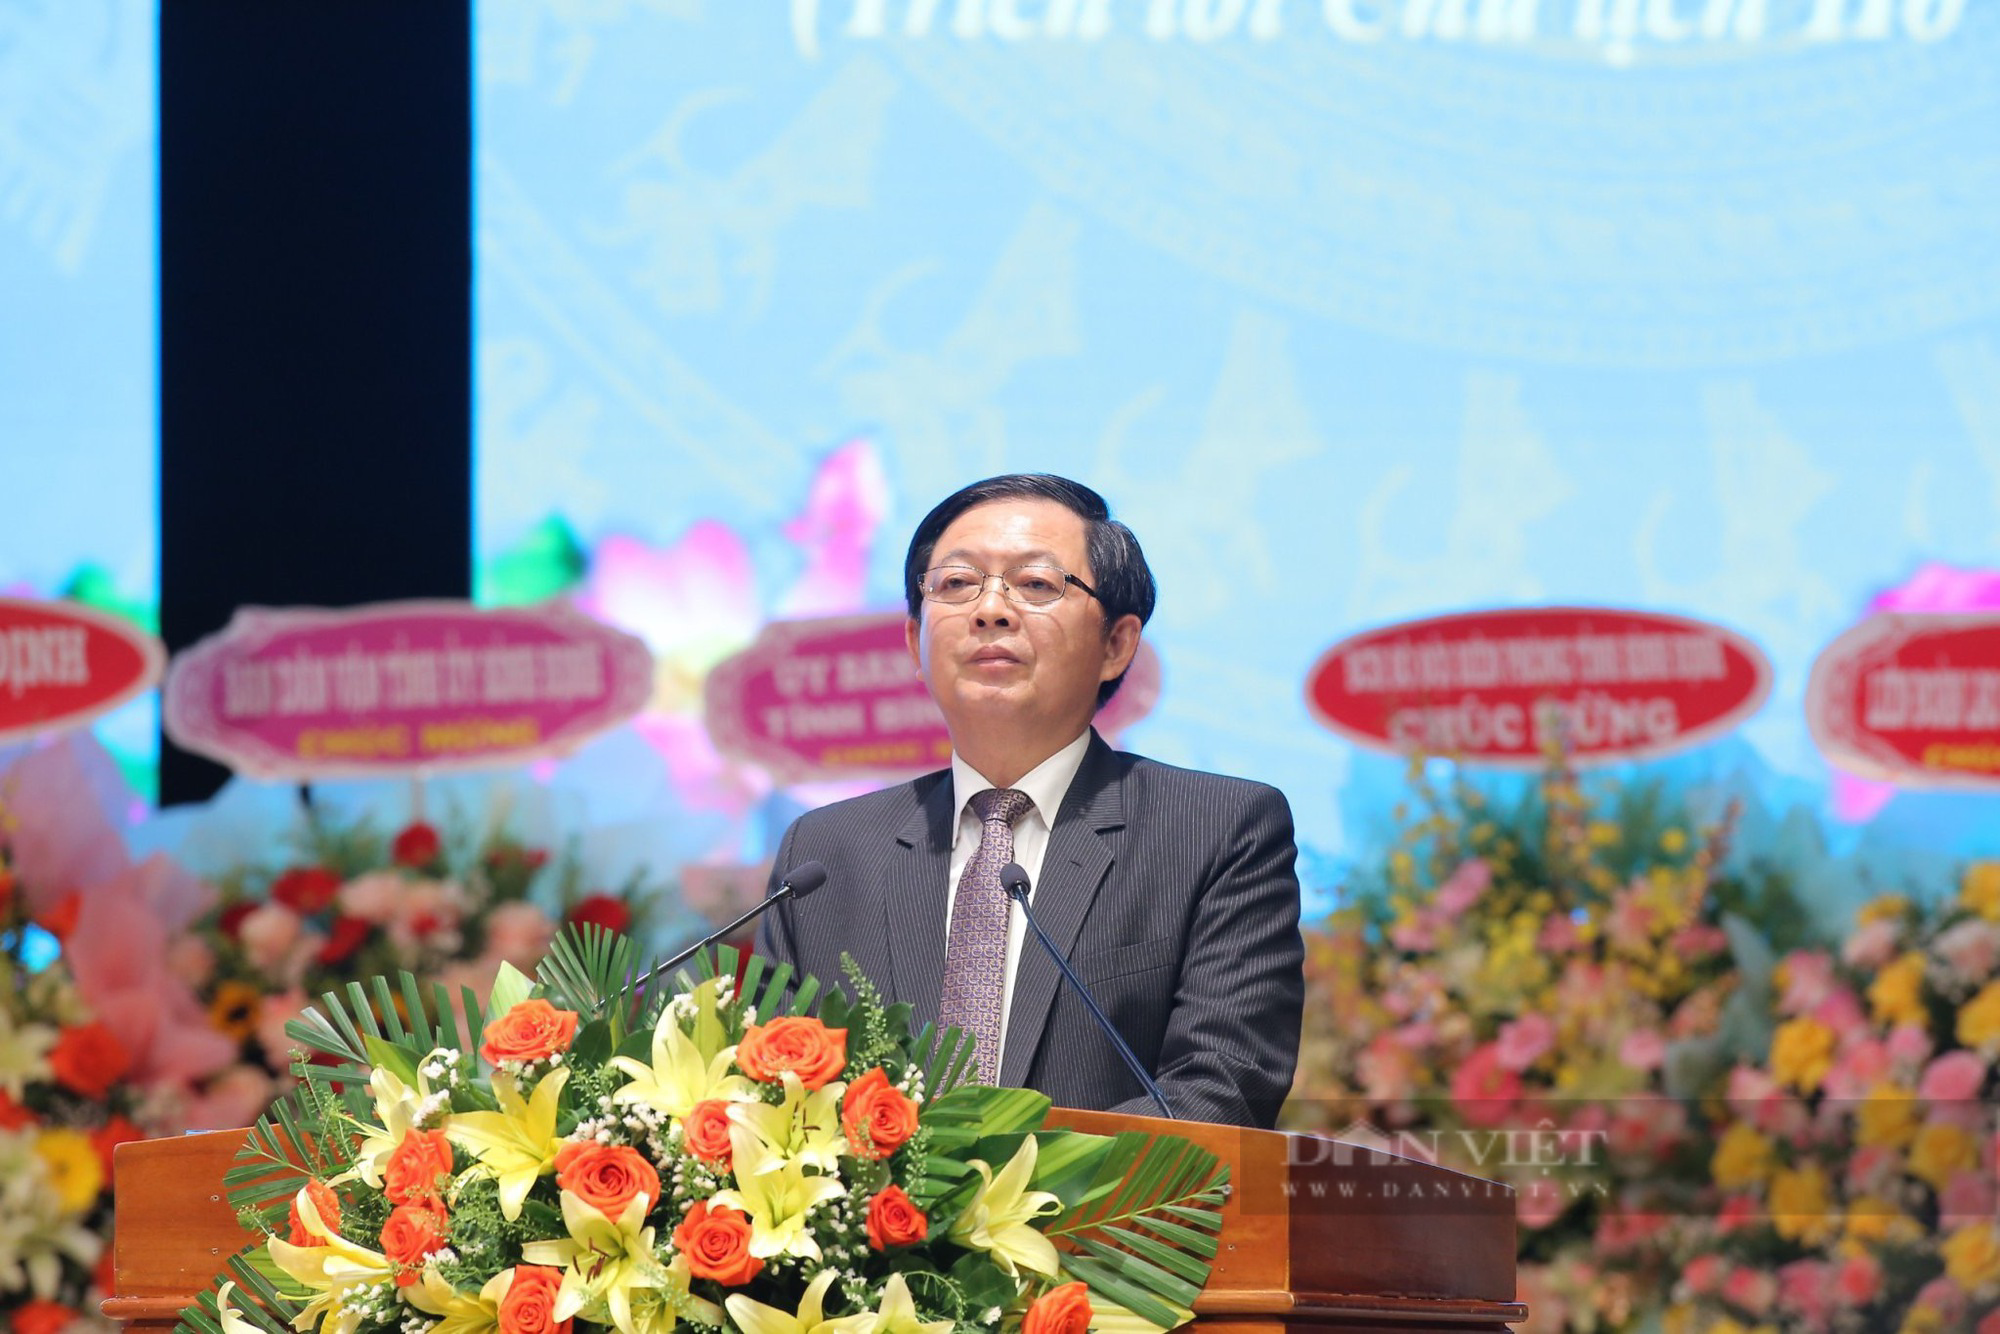 Phó Chủ tịch Hội NDVN và Bí thư Tỉnh ủy Bình Định dự, chỉ đạo Đại hội Hội Nông dân Bình Định - Ảnh 7.